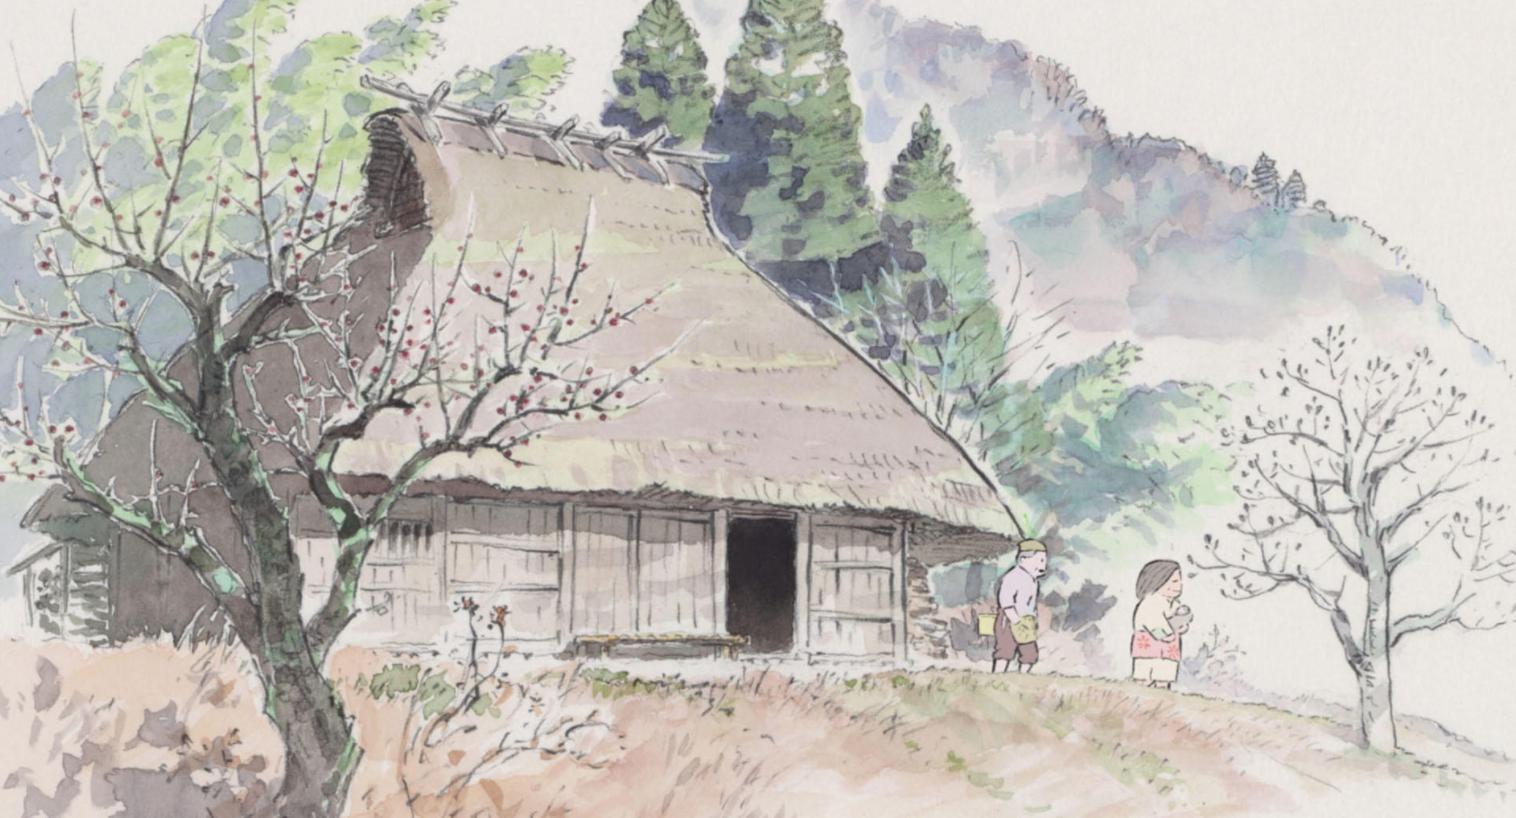 Image: Studio Ghibli 